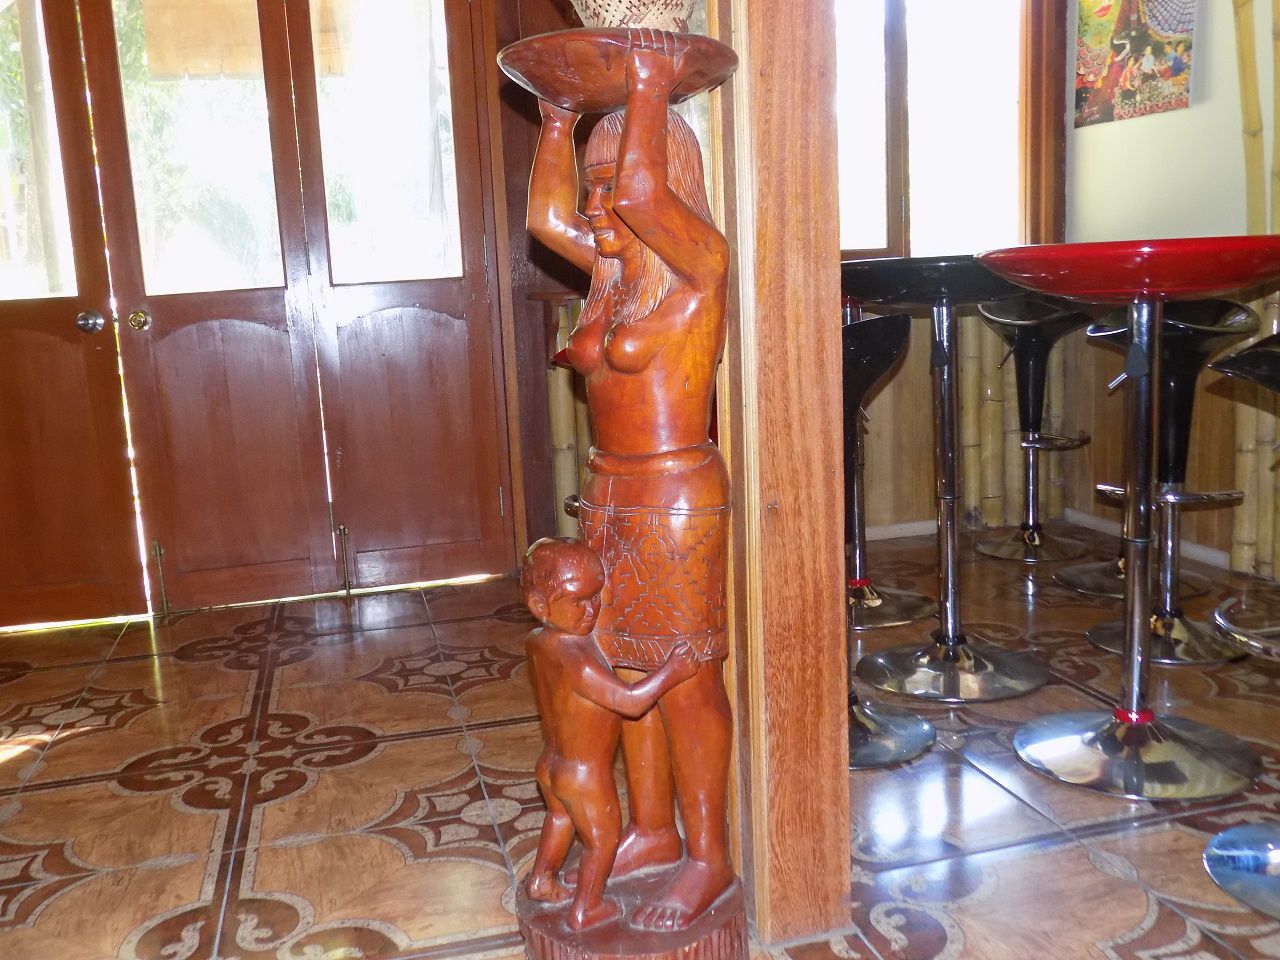 в столовой, статуэтка женщина племени Шапидо - Айяуаска.